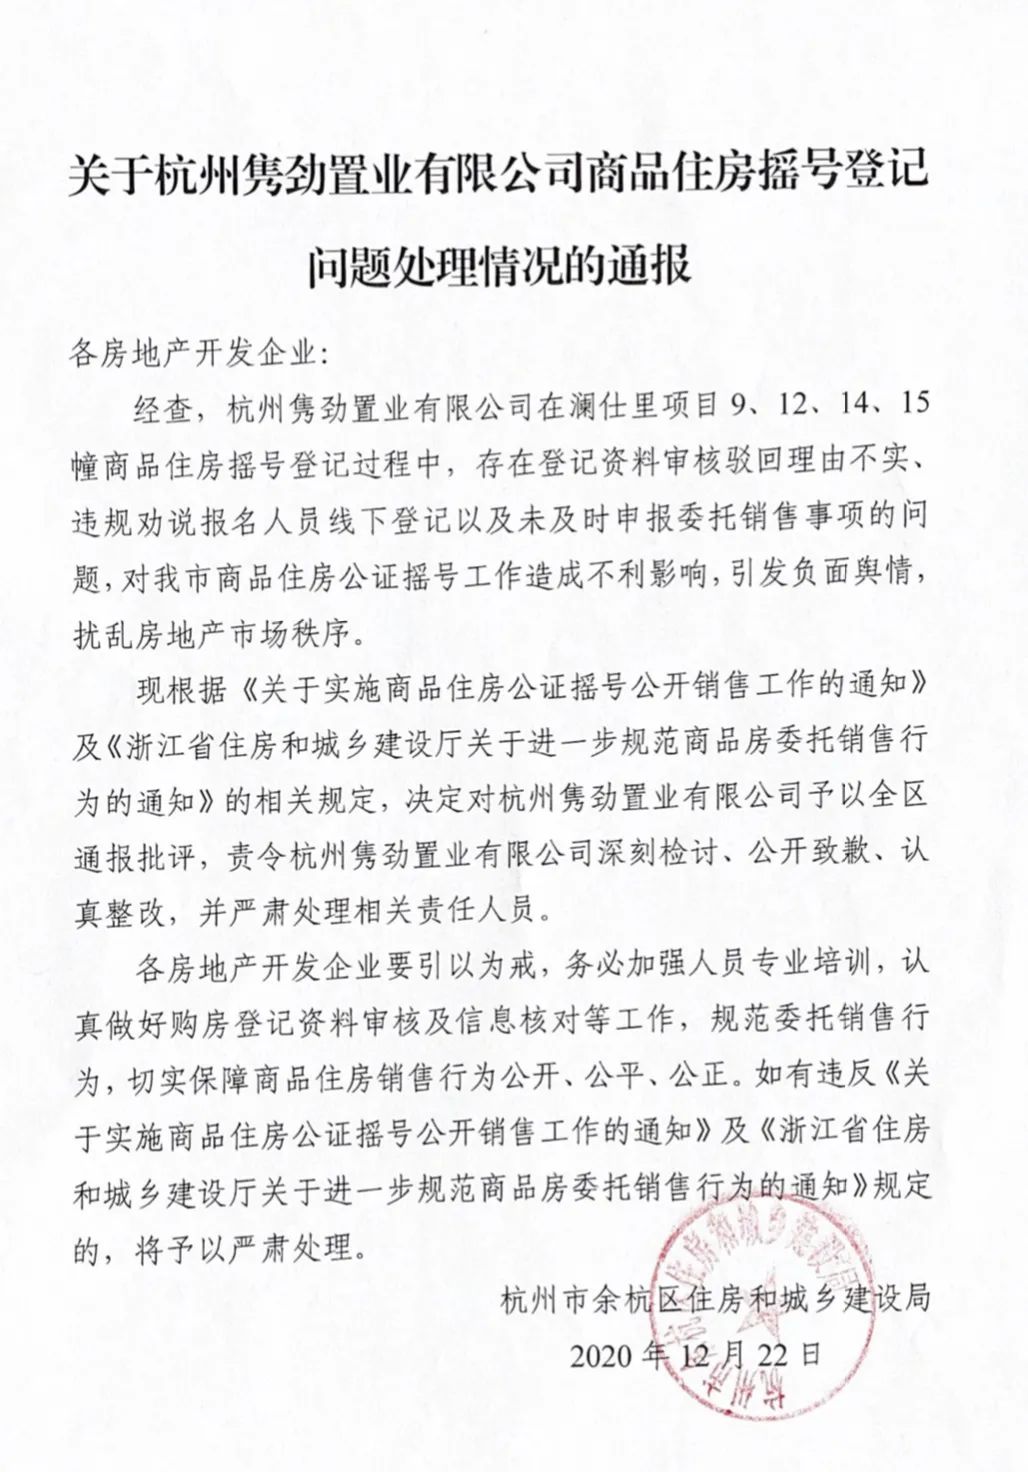 杭州隽劲置业有限公司因商品房摇号登记存在问题被通报